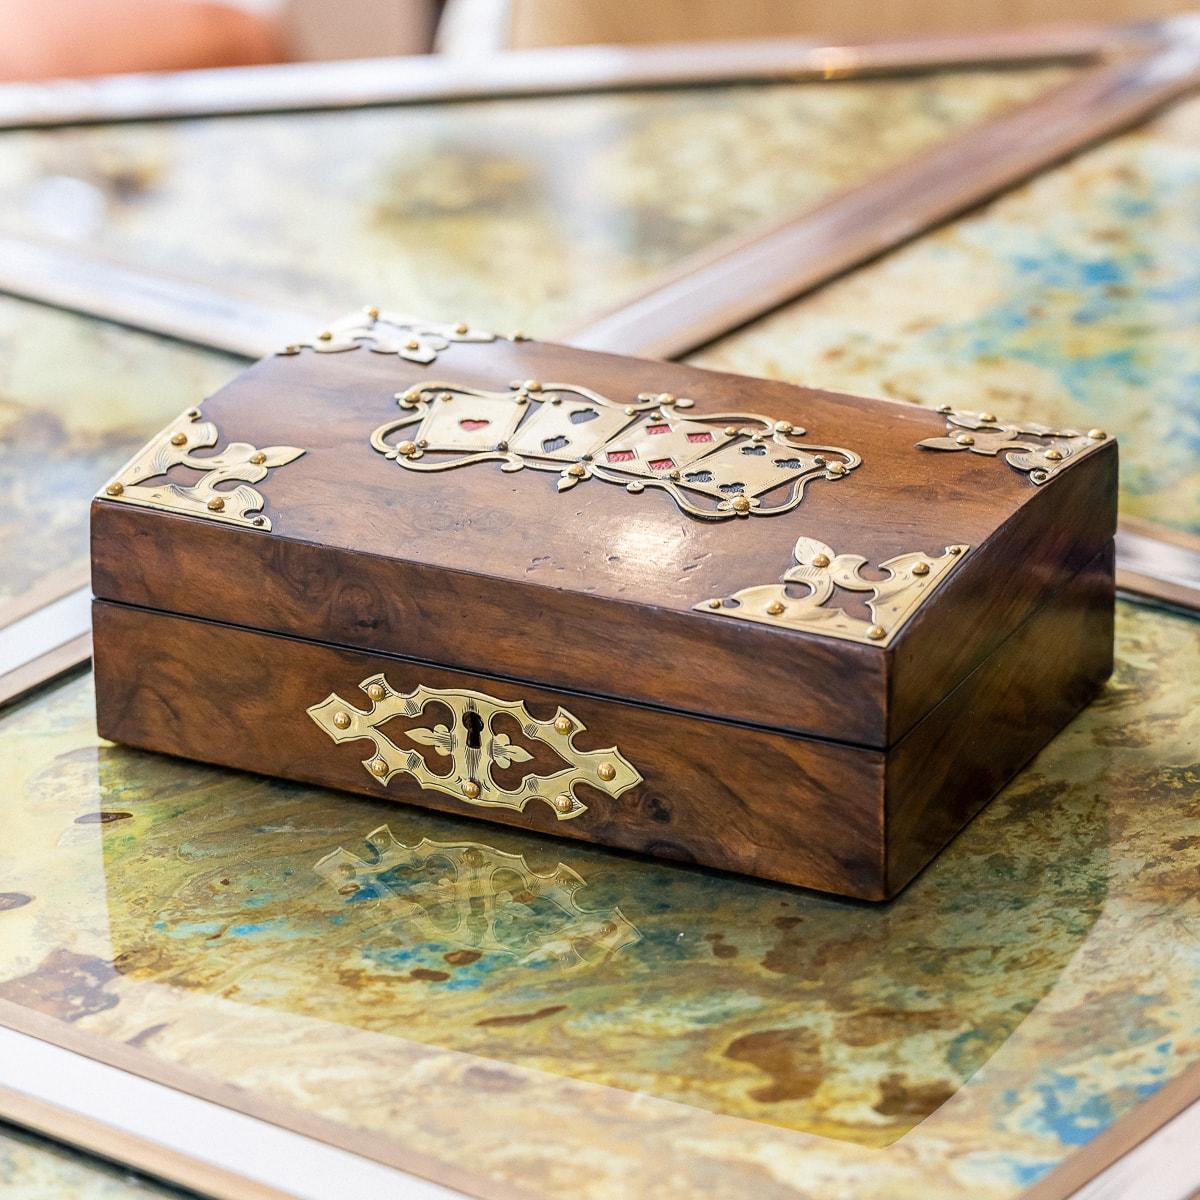 Ancien compendium de jeux en noyer de la fin du 19e siècle de l'époque victorienne. La boîte elle-même est protégée par une serrure et une clé, le couvercle étant orné de cartes à jouer décoratives en laiton, entourées de décorations d'angle dans le